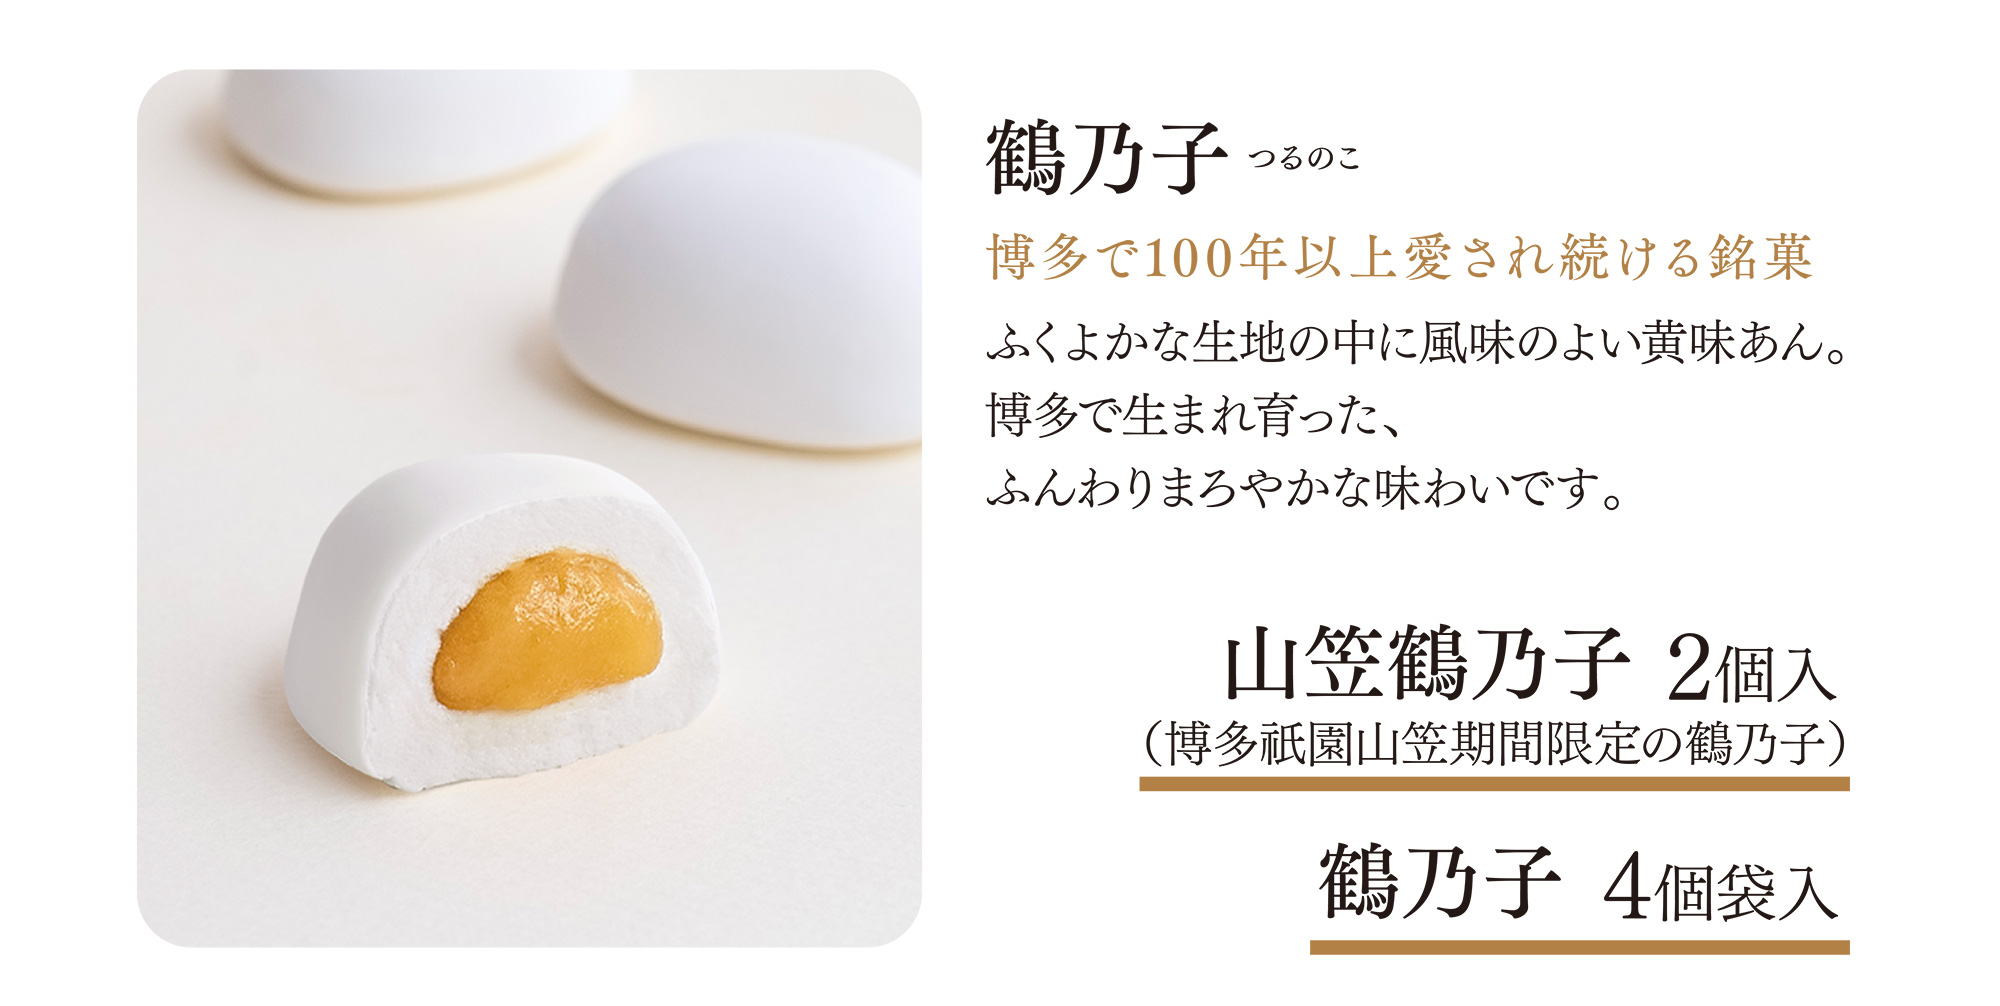 鶴乃子 つるのこ 博多で100年以上愛され続ける銘菓 ふくよかな生地の中に風味のよい黄味あん。博多で生まれ育った、ふんわりまろやかな味わいです。